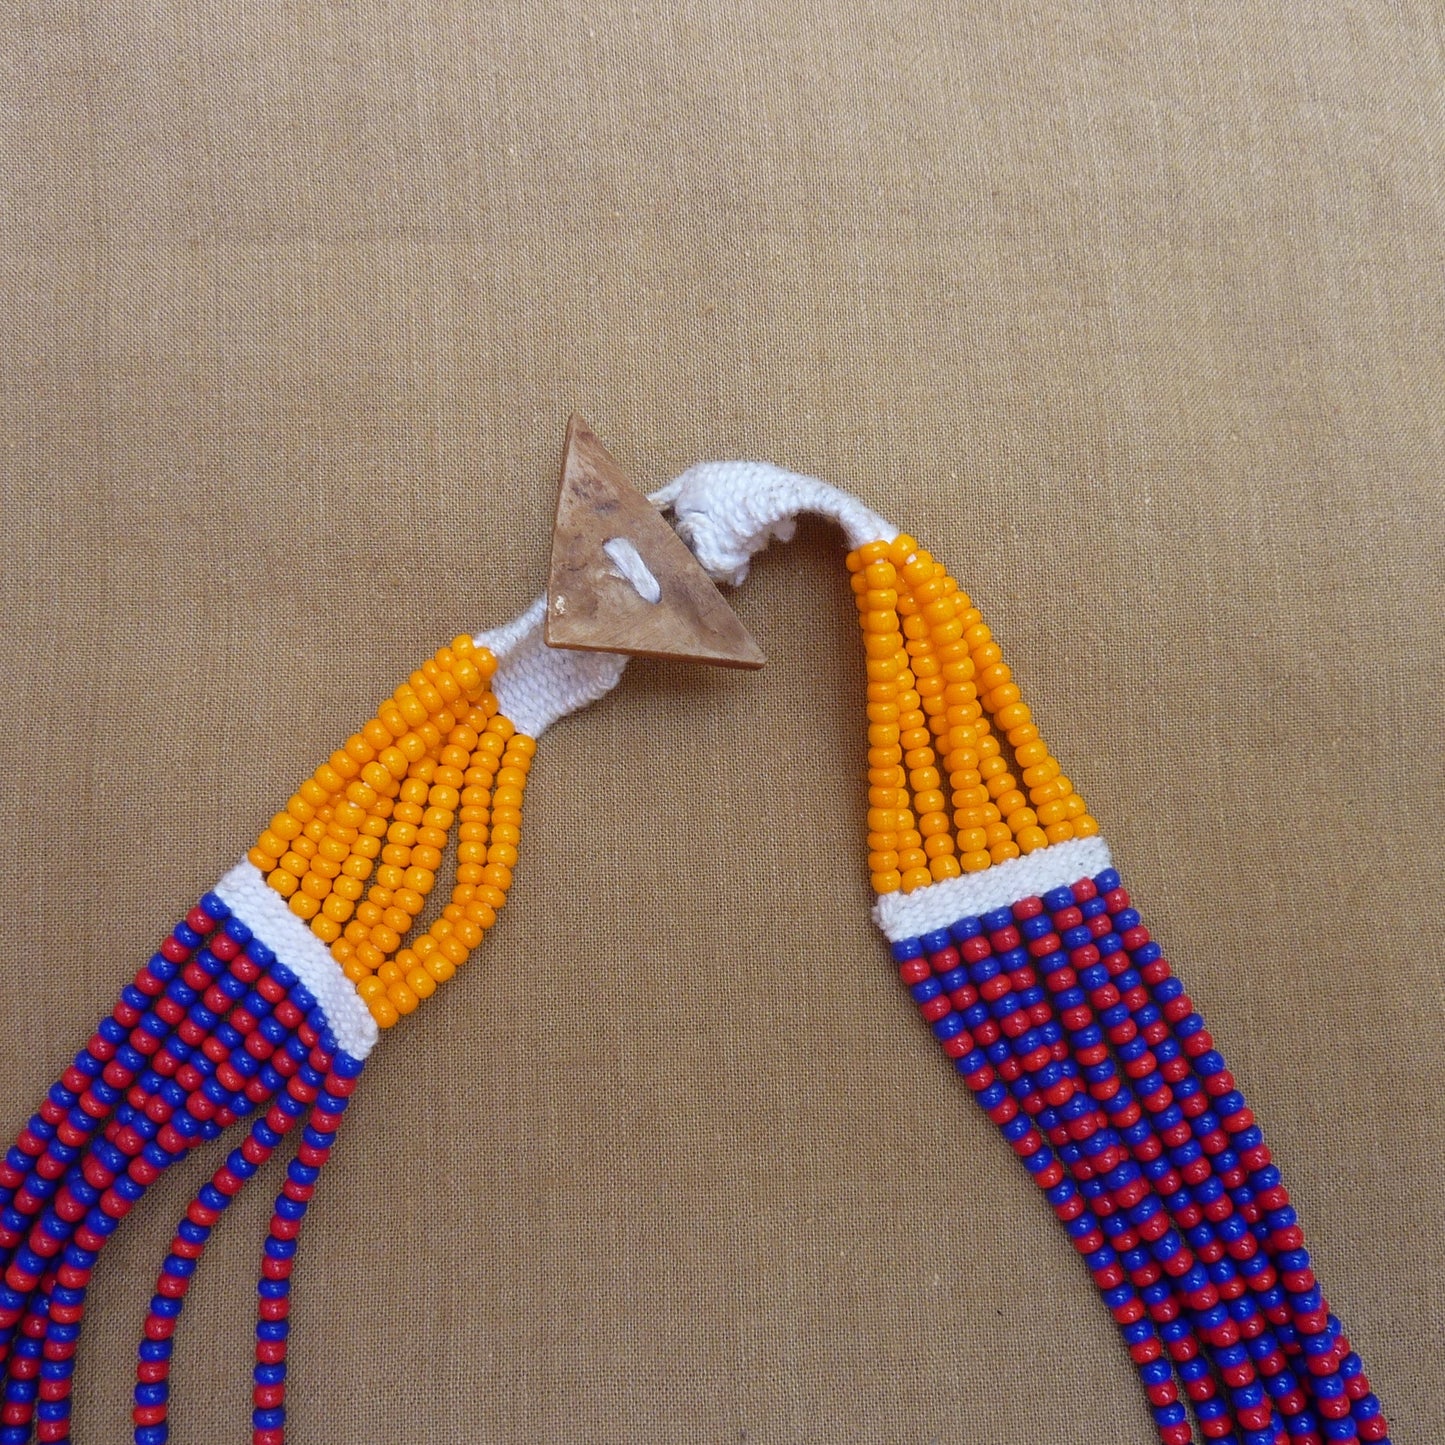 Grand collier ethnique plastron orange et violet, couleurs vibrantes - pièce unique